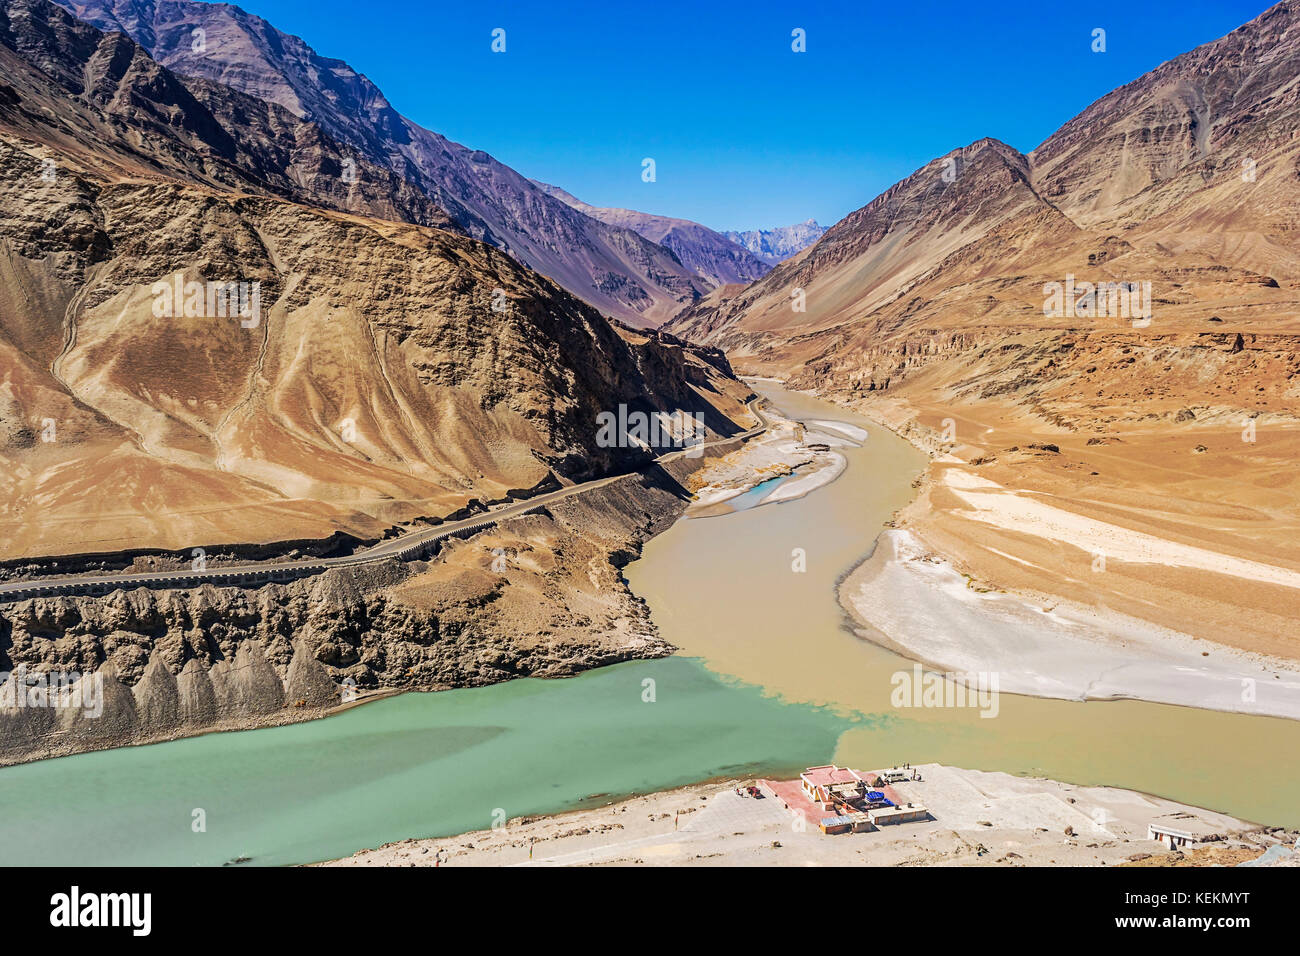 Der Zusammenfluss von einer schönen blauen Zanskar Fluss mit einem Schlammigen indus durch die Berge rundum umgeben sieht schön Stockfoto